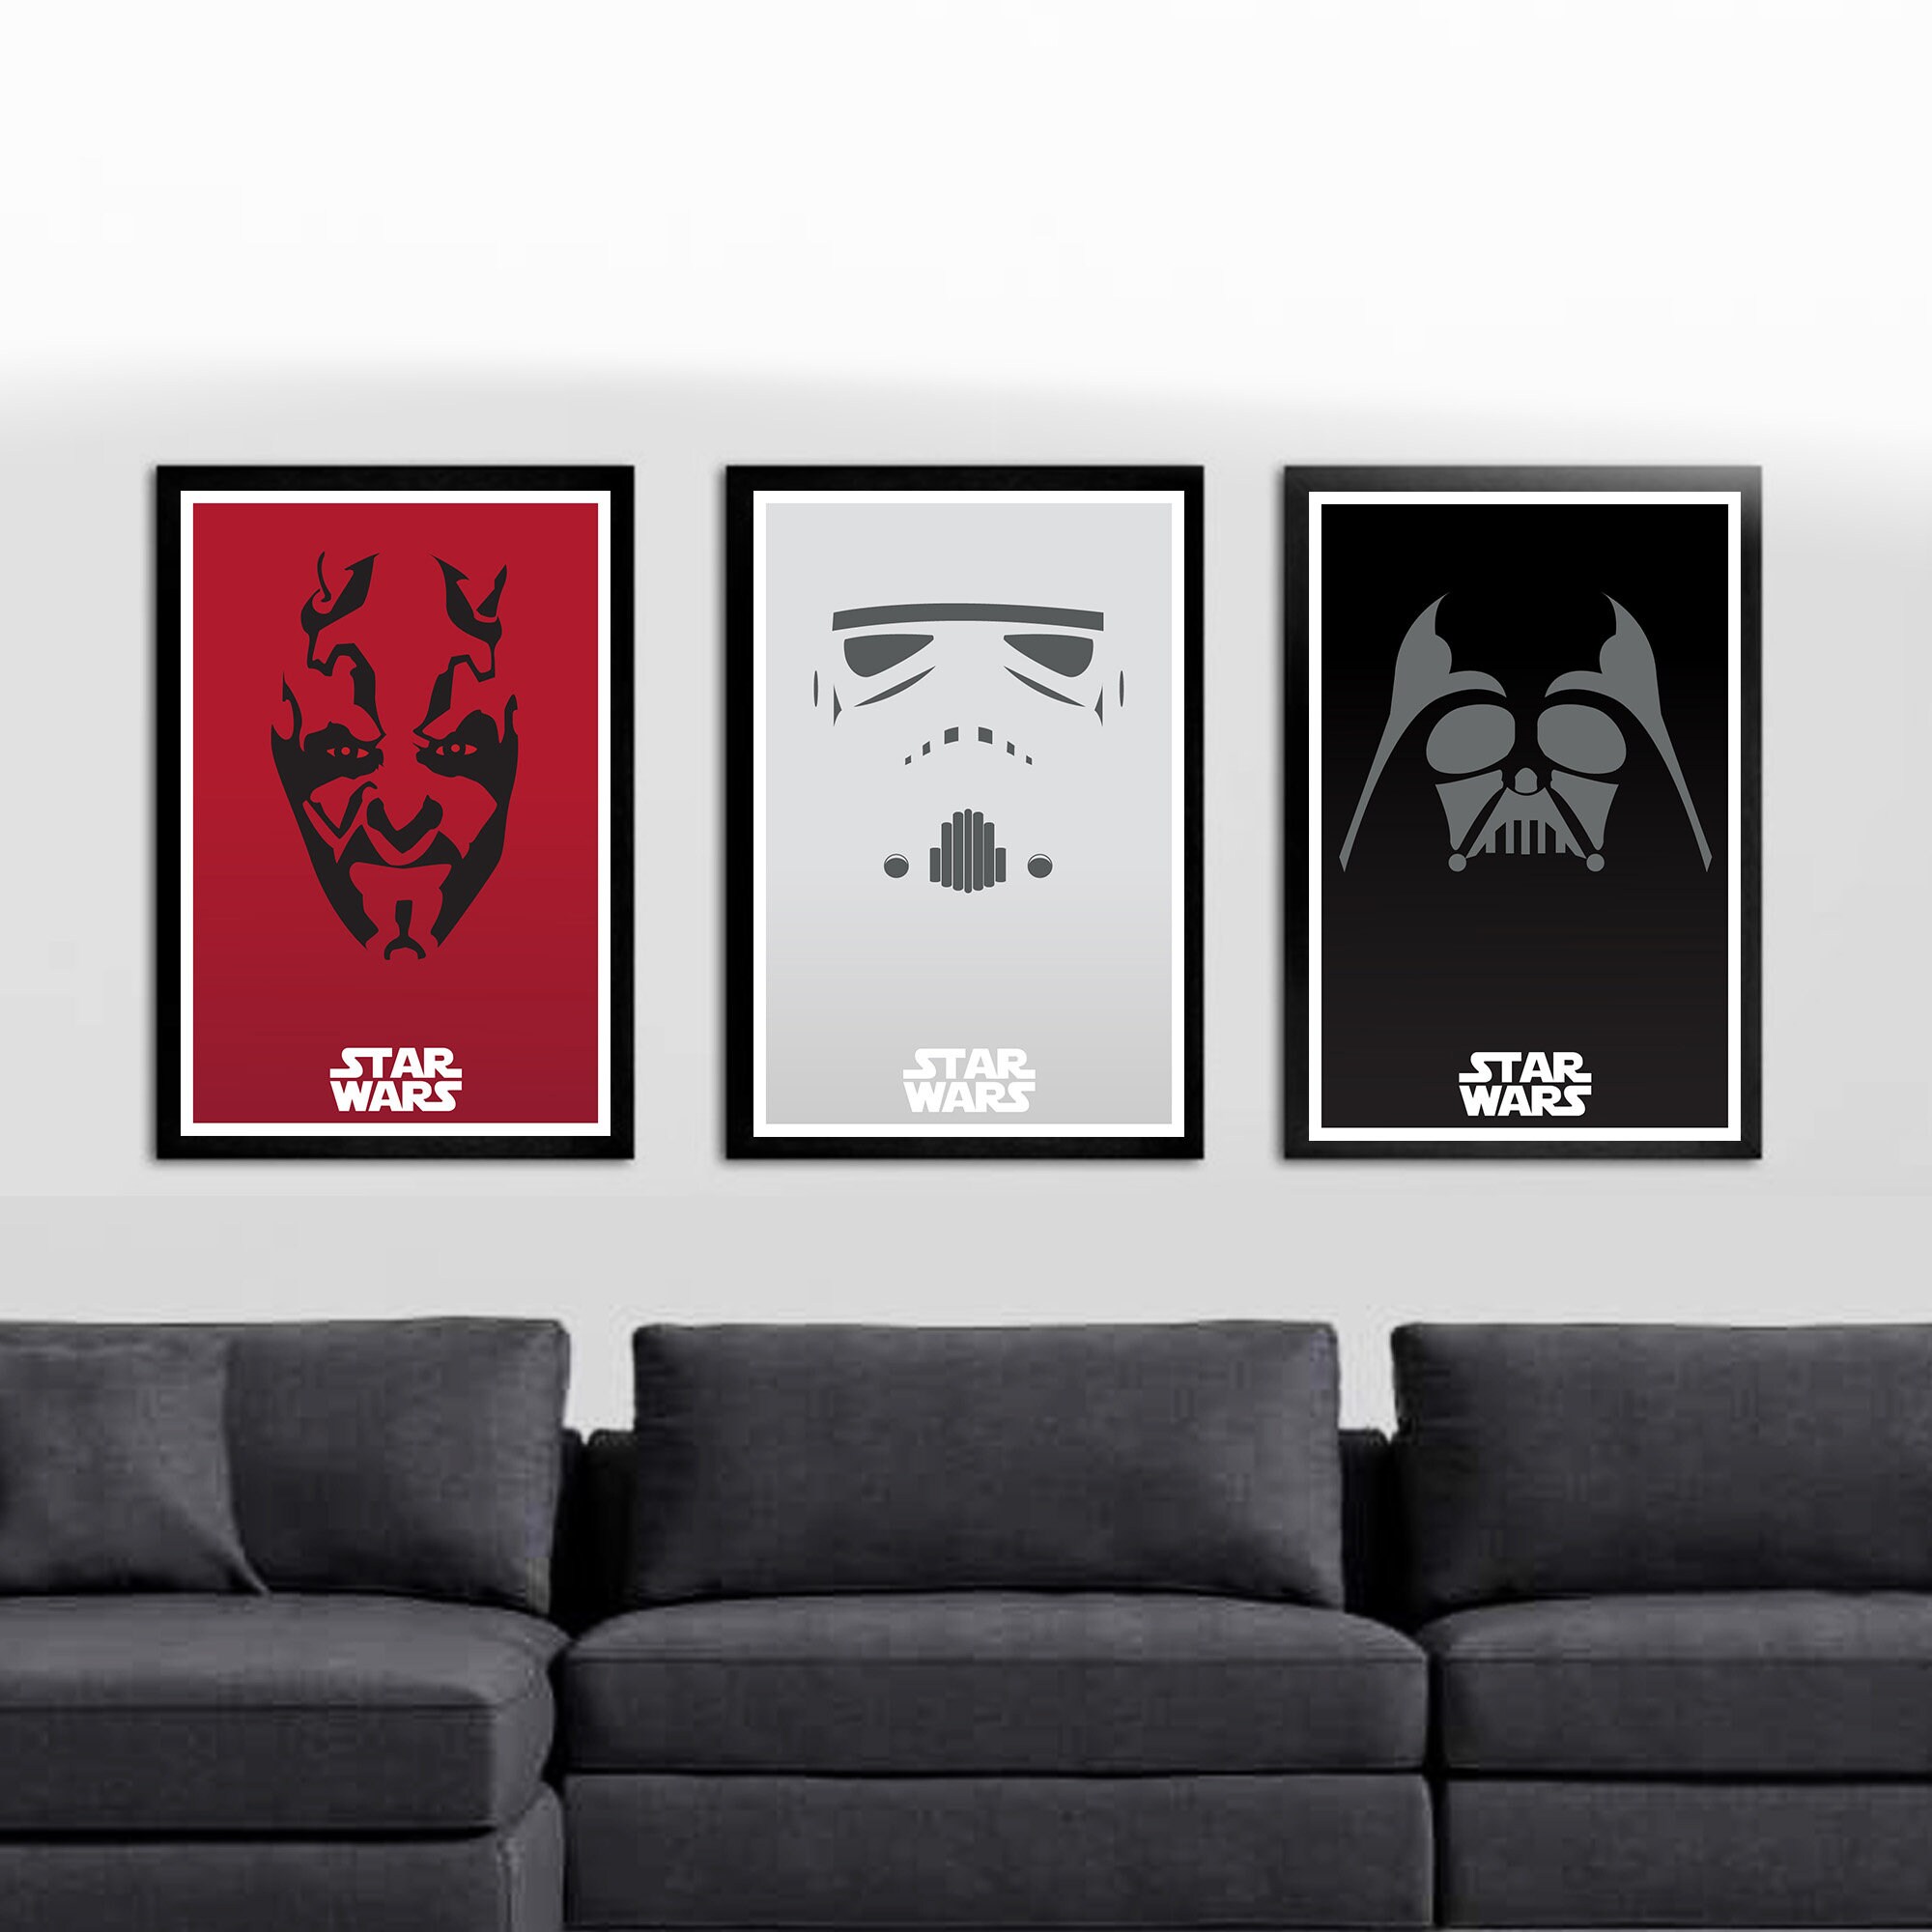 Star Wars Trilogy Poster Set - Stormtrooper poster, Darth Maul poster, Darth Vader poster, Digital Download set of 3 - 12x18 each file